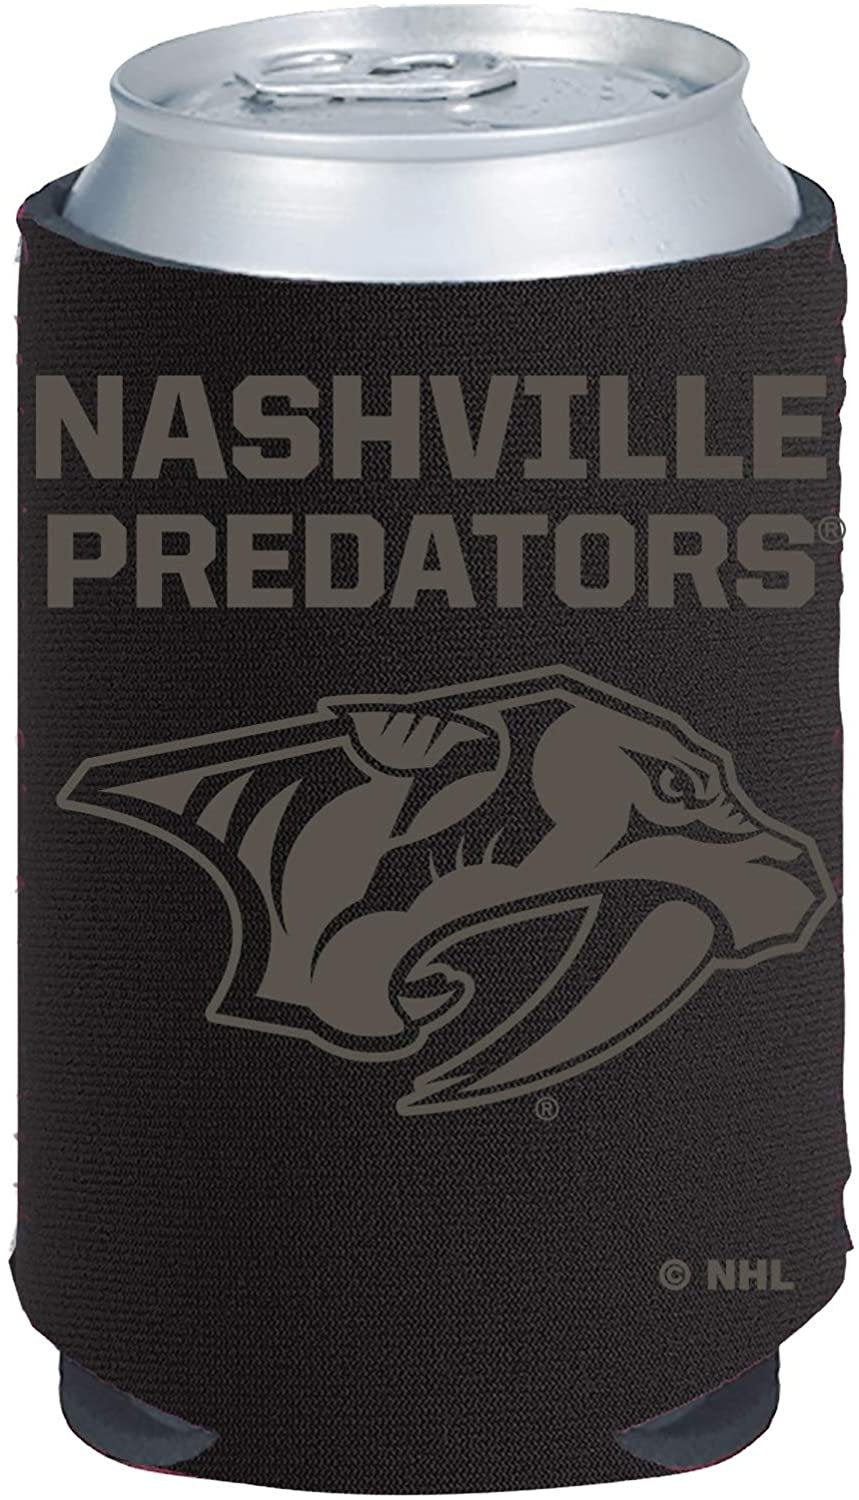 Nashville Predators Tonal Black Design 2-Pack 12oz CAN Neoprene Beverage Insulator Holder Cooler Hockey